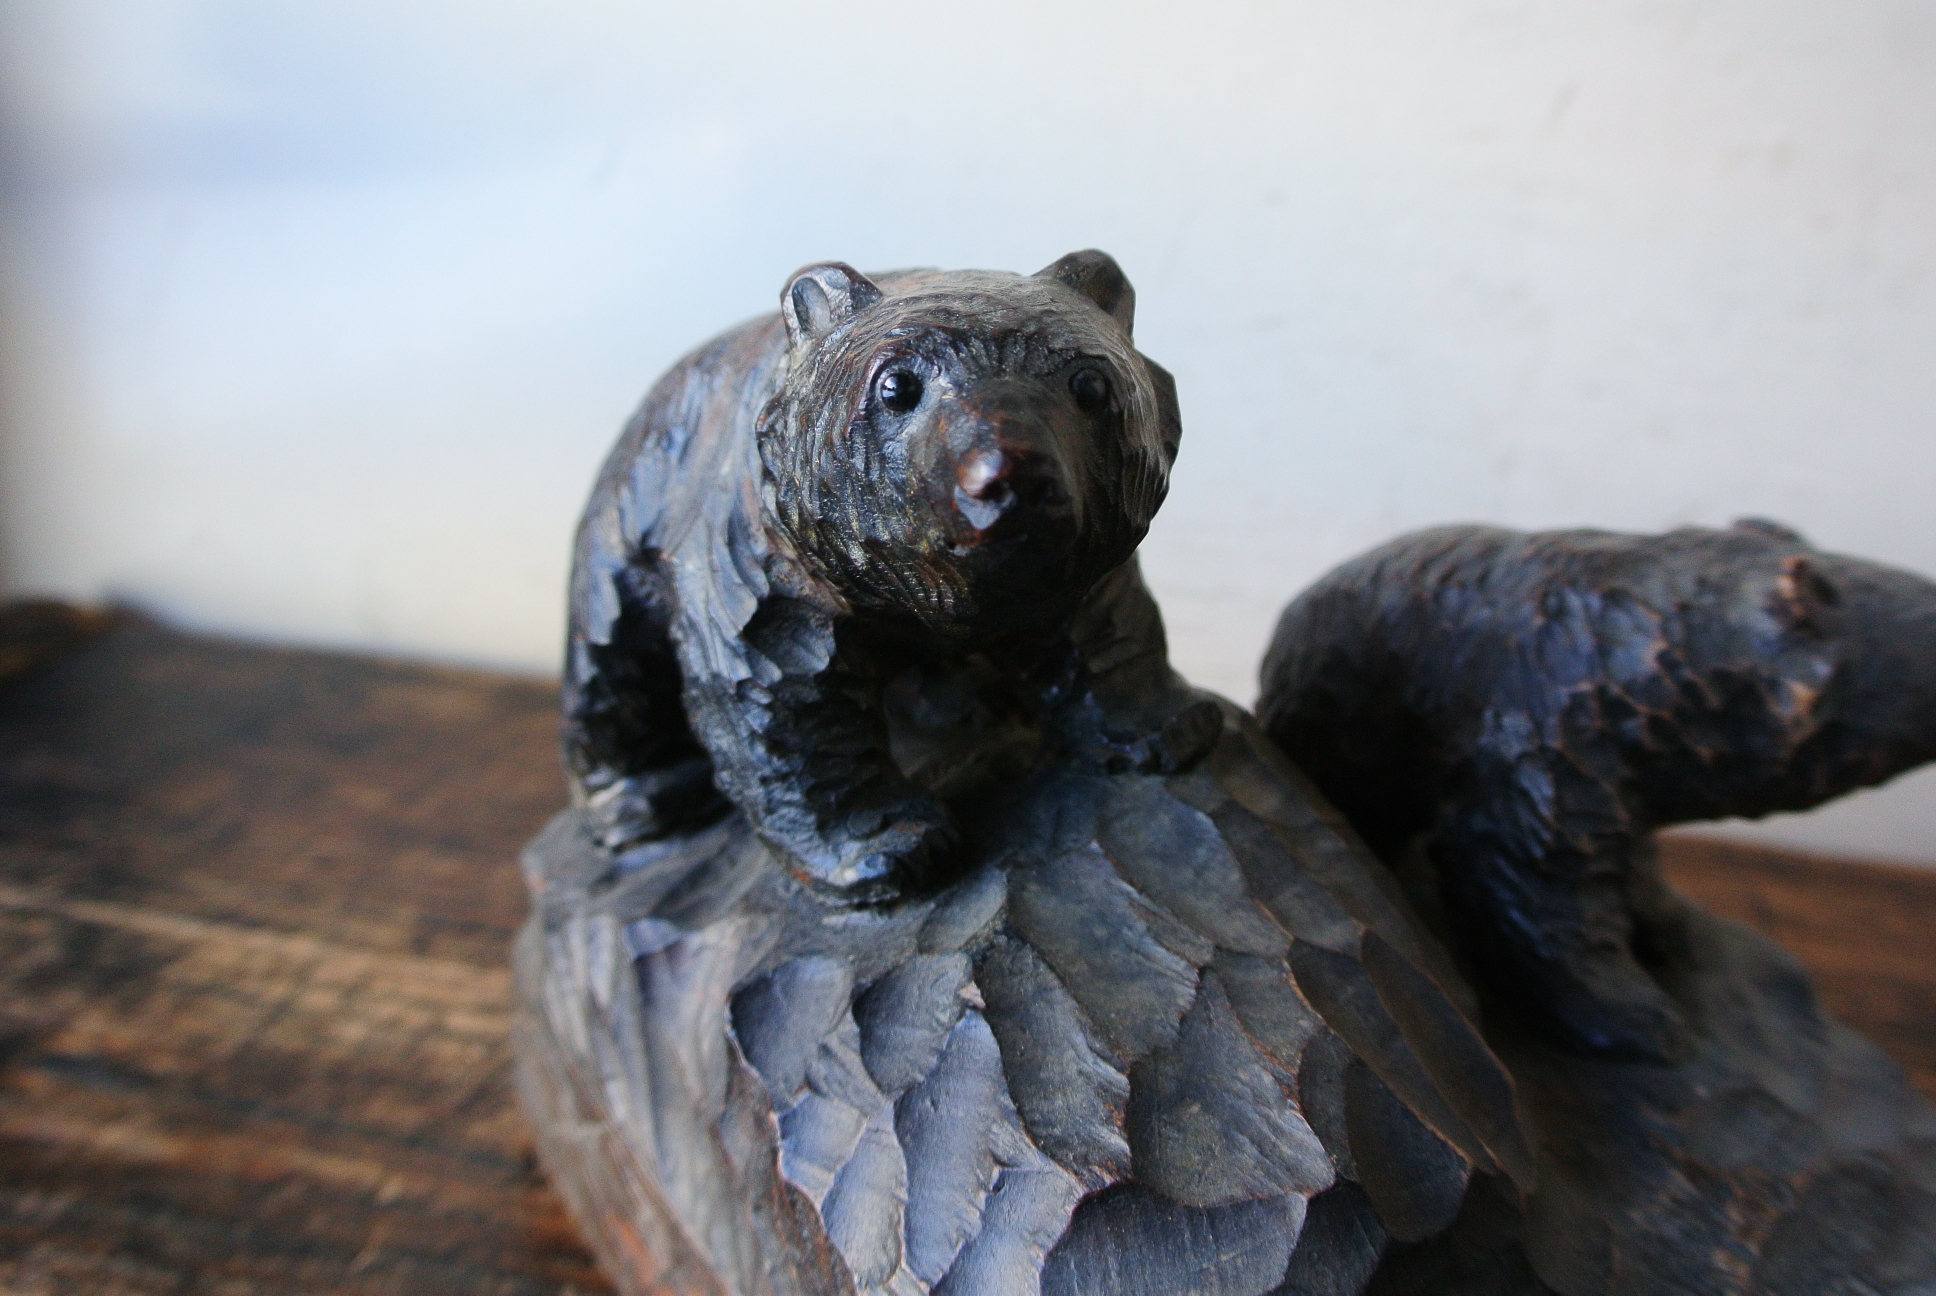 旭川の木彫り熊「親子熊」 - アンティーク雑貨・古道具の札幌 